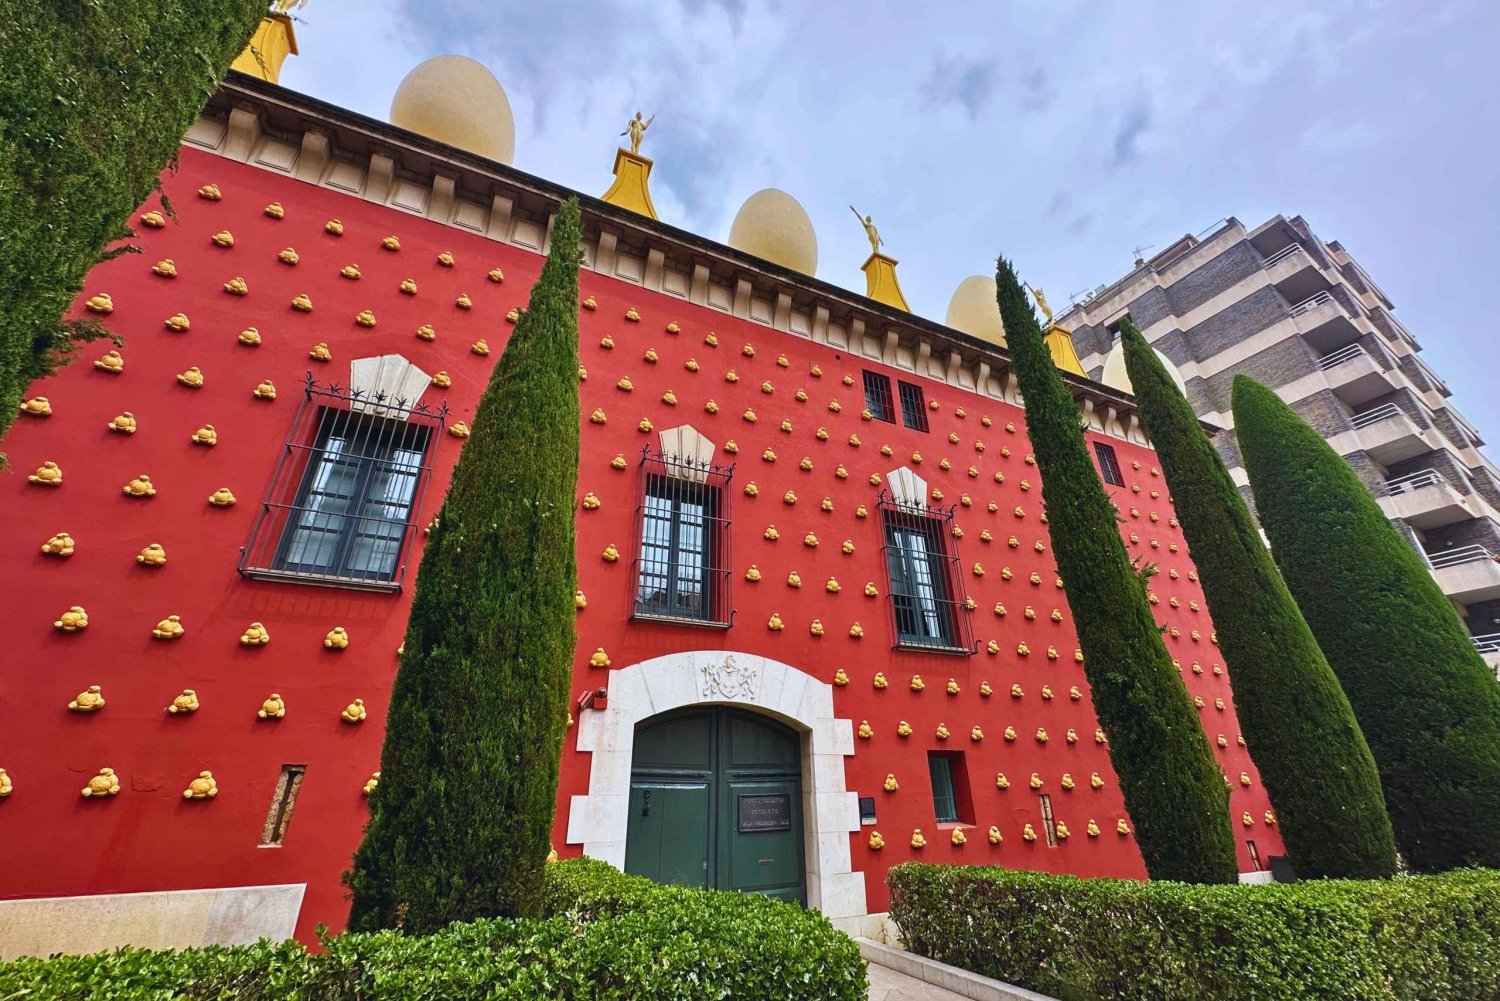 Z Barcelony: Dalí i średniowieczna Girona - prywatna jednodniowa wycieczka